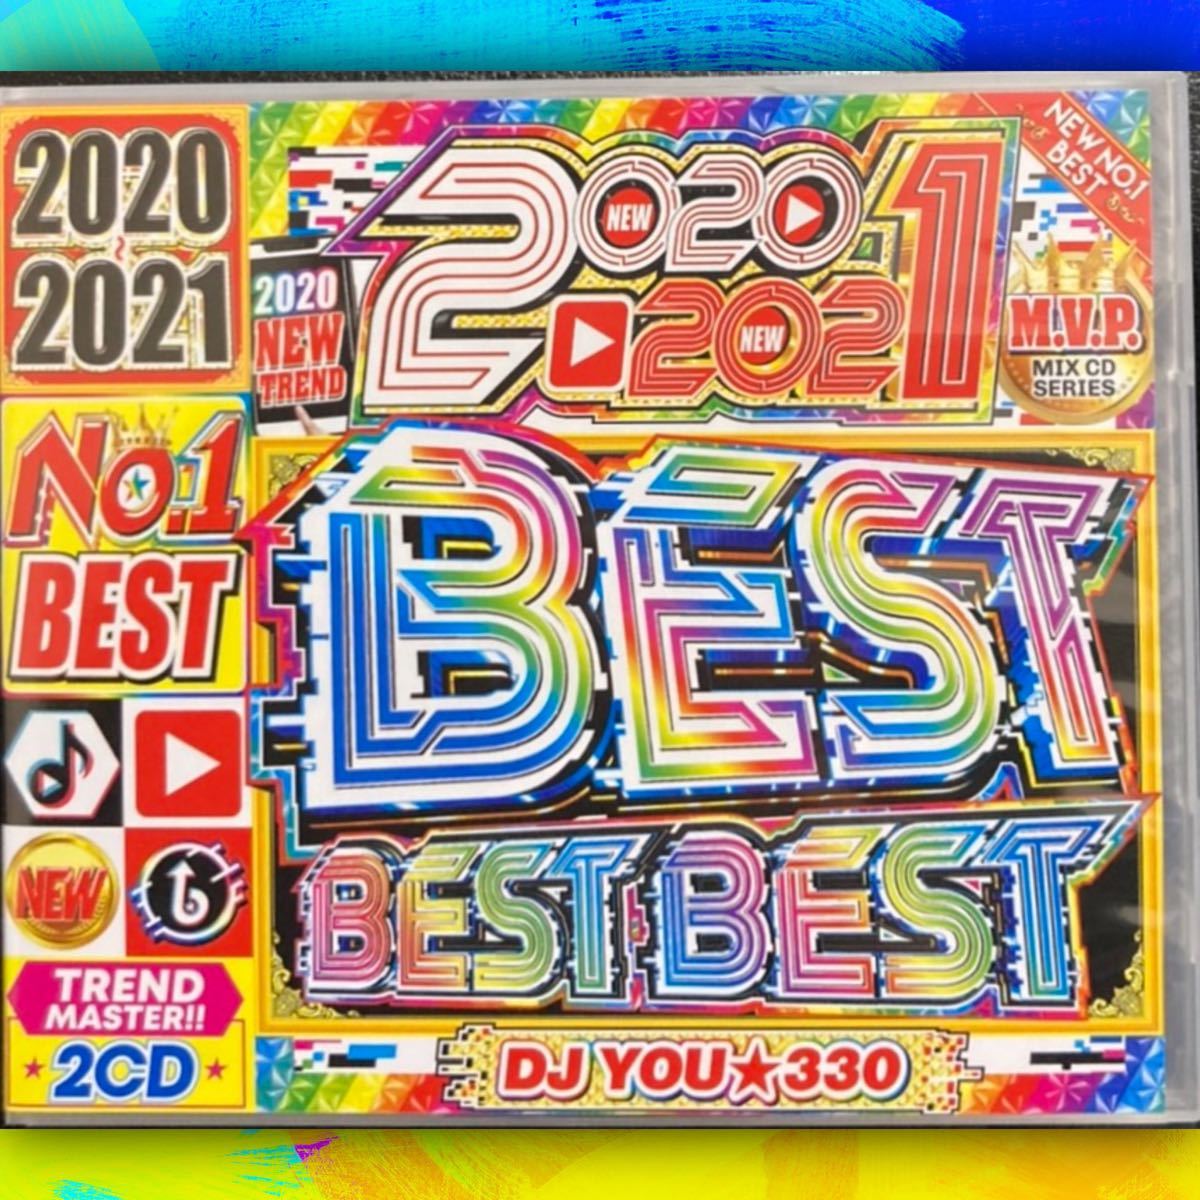 洋楽CD 2021 Best Best Best